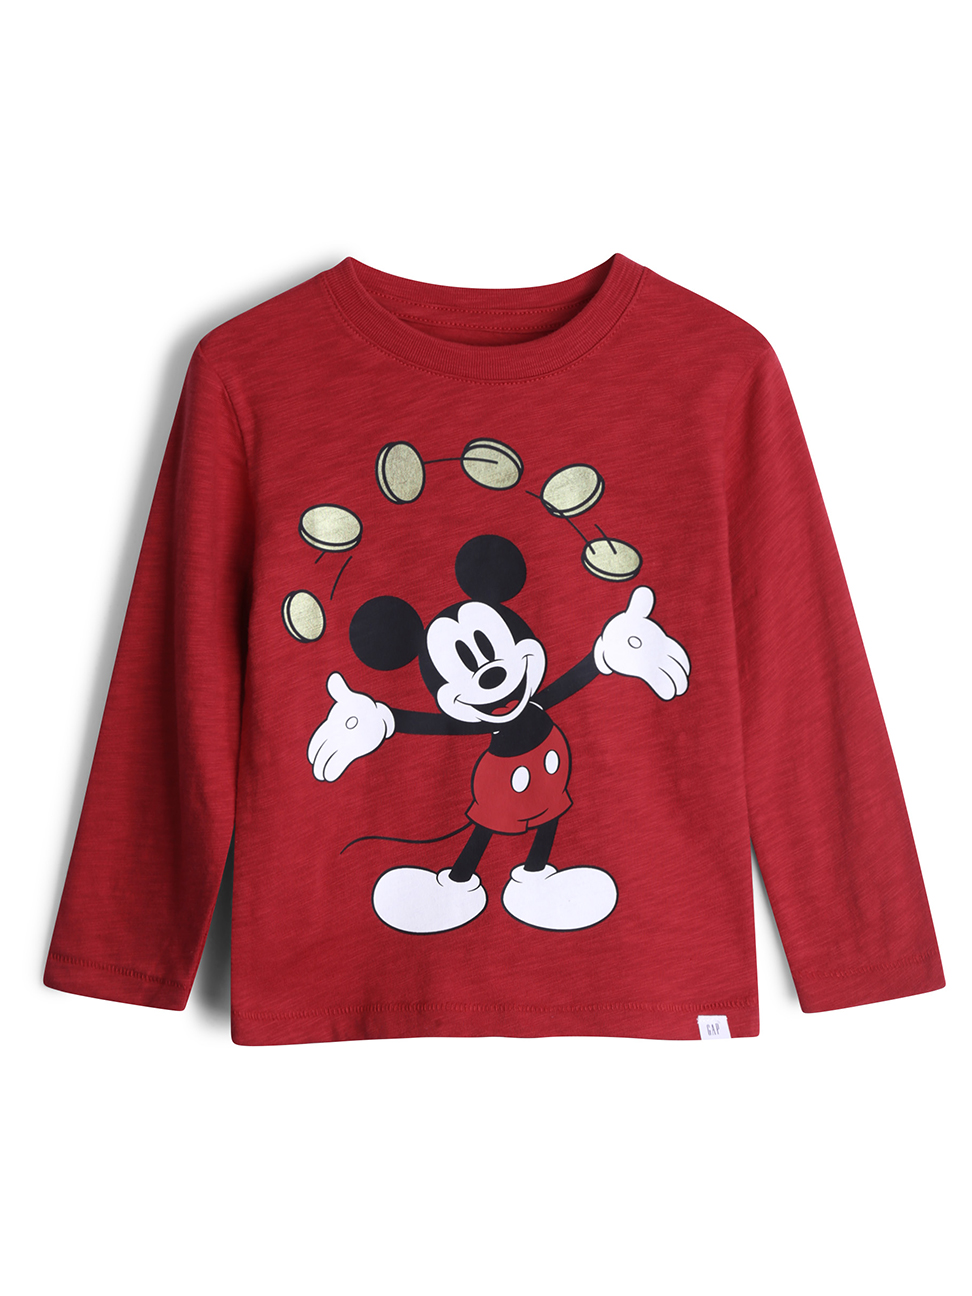 男幼童裝|Gap x Disney迪士尼聯名 米奇棉質舒適圓領T恤-熱情紅